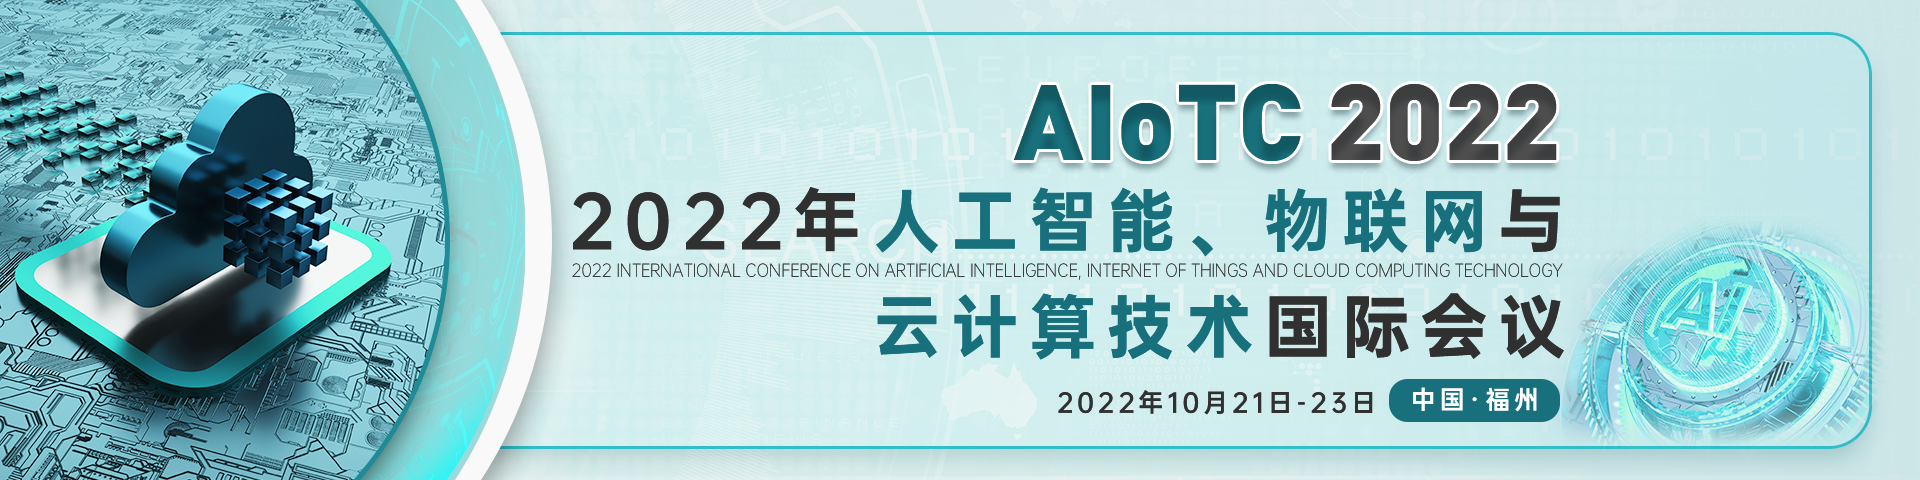 10月福州AIoTC2022-會議官網中文banner-何雪儀-20211231.png